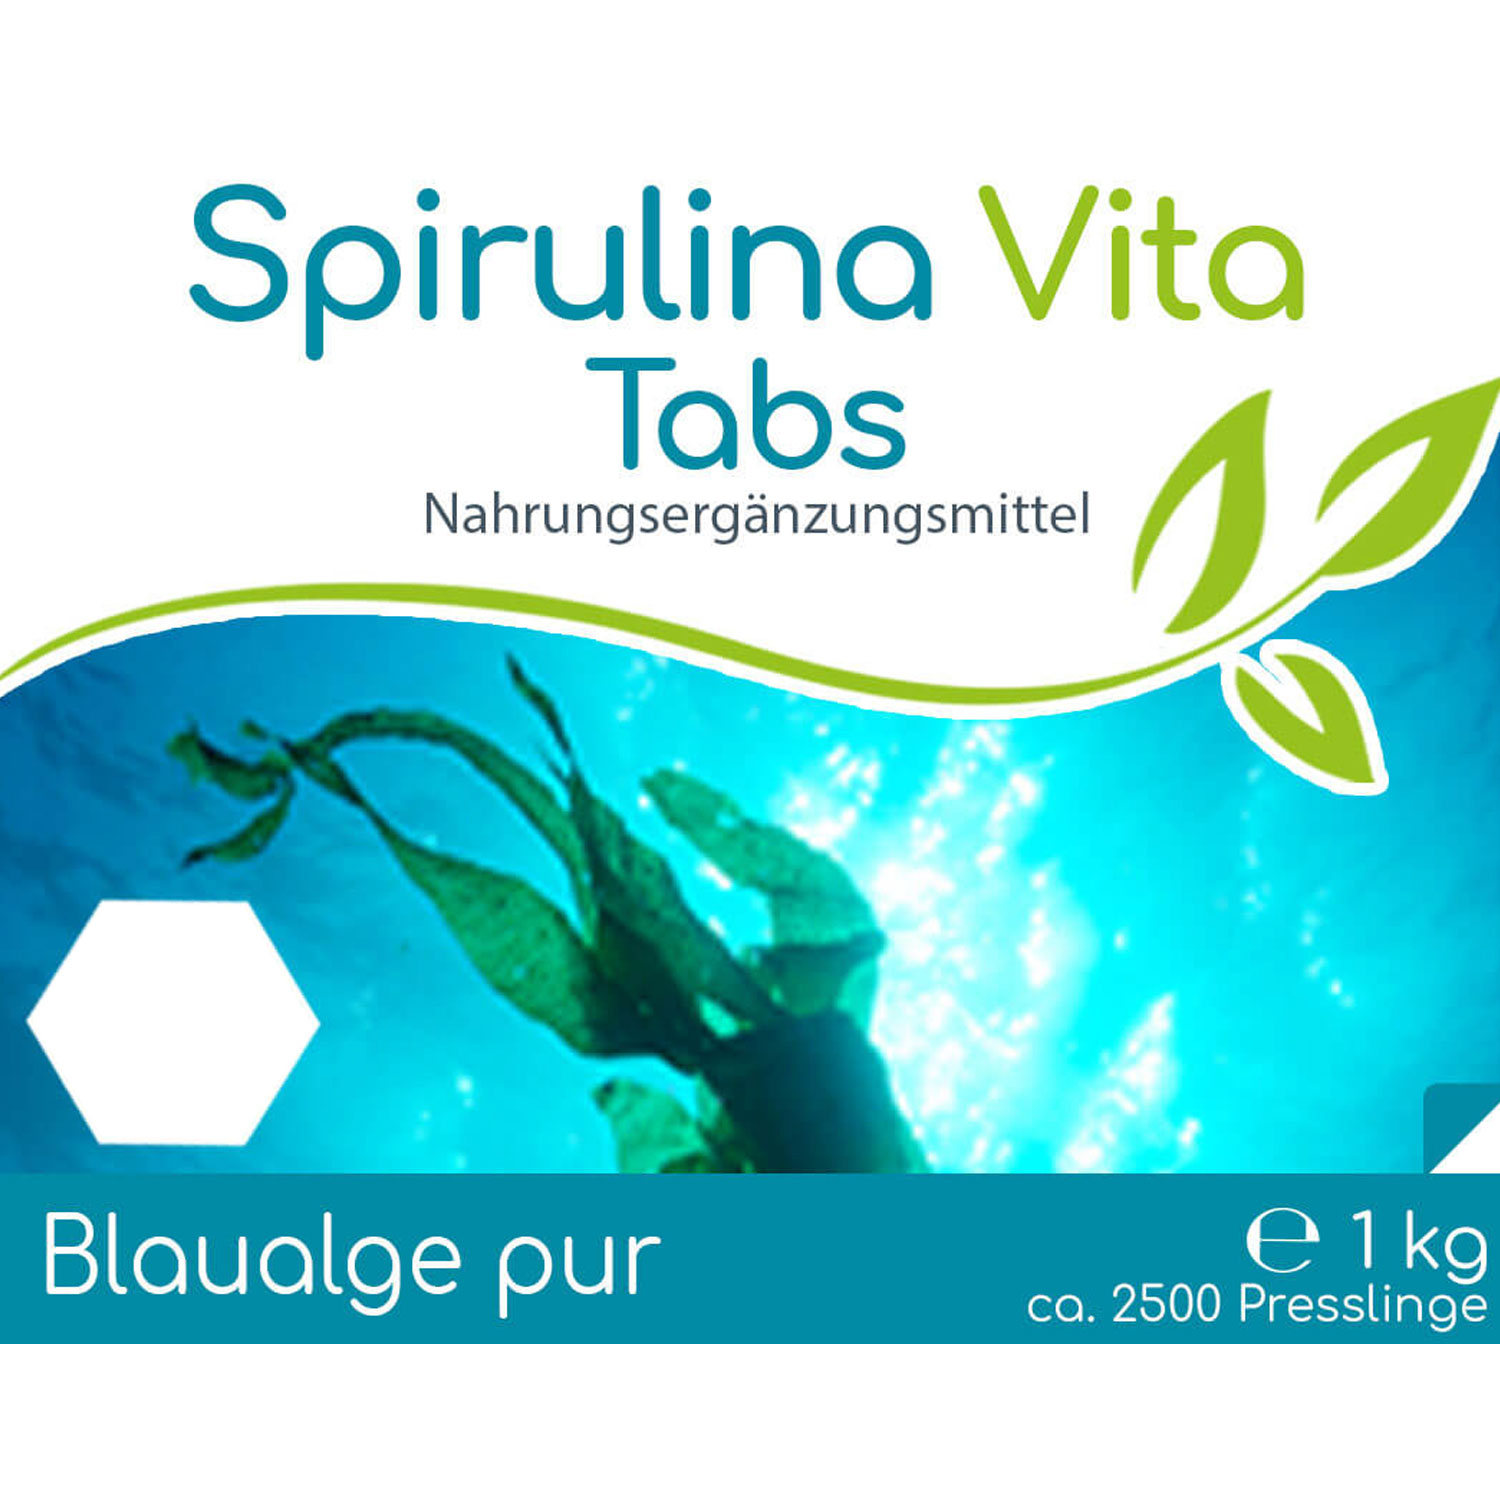 Spirulina Vita Tabs à 400mg 1kg von Cellavita - Etikett vorn